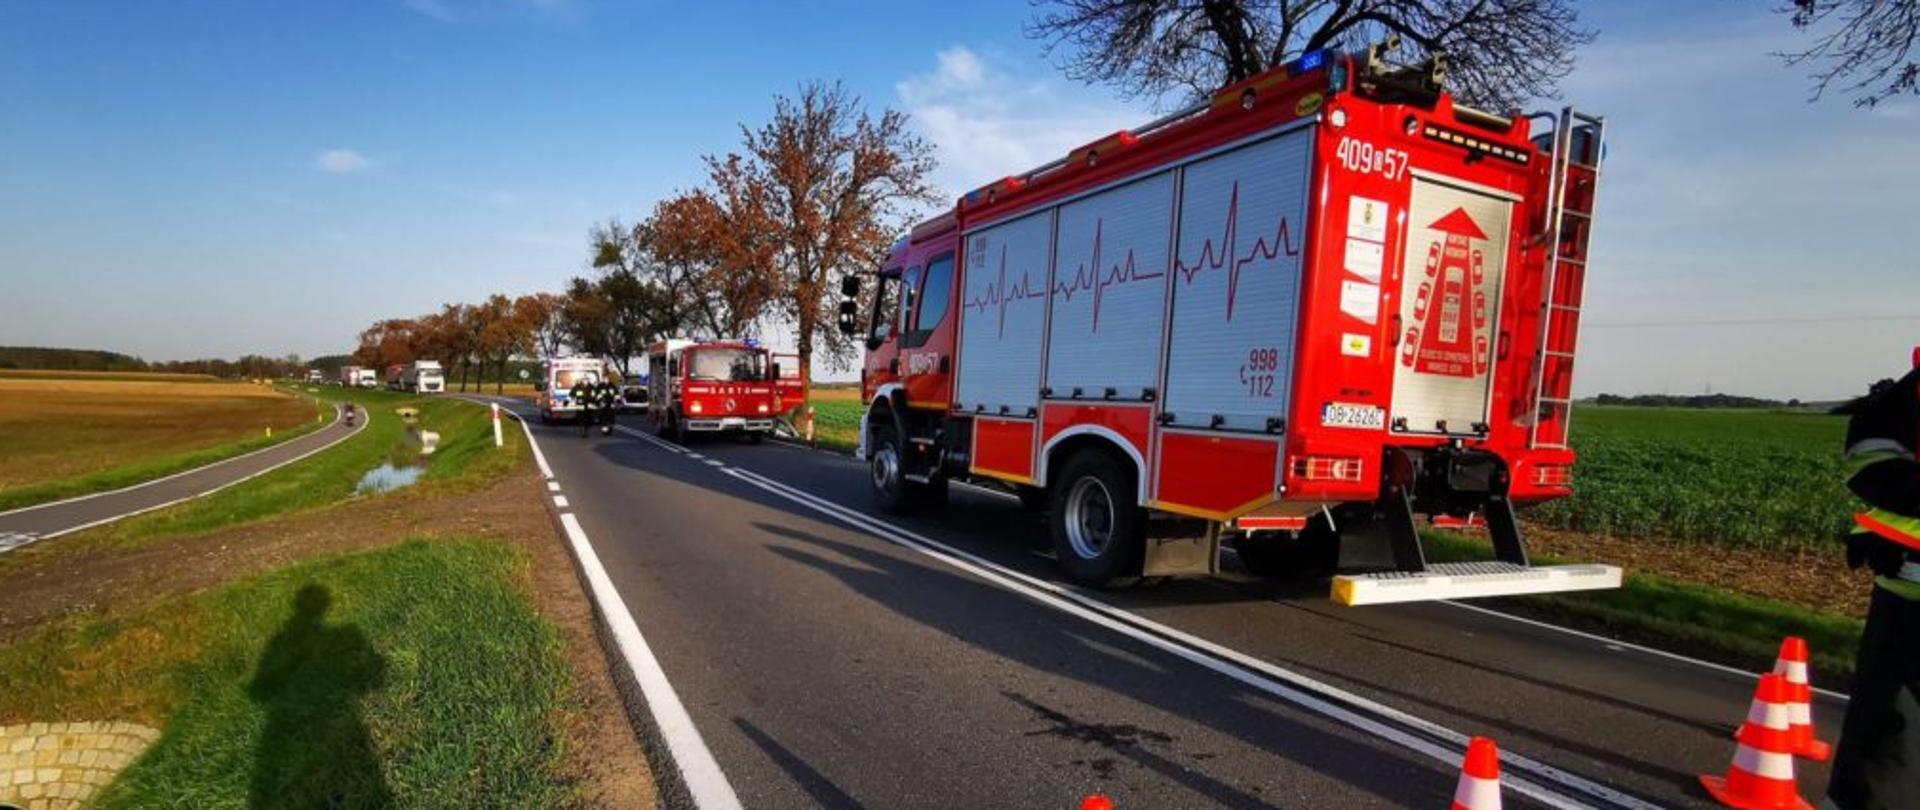 Zdjęcie przedstawia zamknięta drogę krajową nr. 39 na której znajdują się 2 pojazdy pożarnicze z OSP Lubsza oraz OSP Michałowice. W tle widoczny jest pojazd ZRM oraz samochód biorący udział w zdarzeniu.